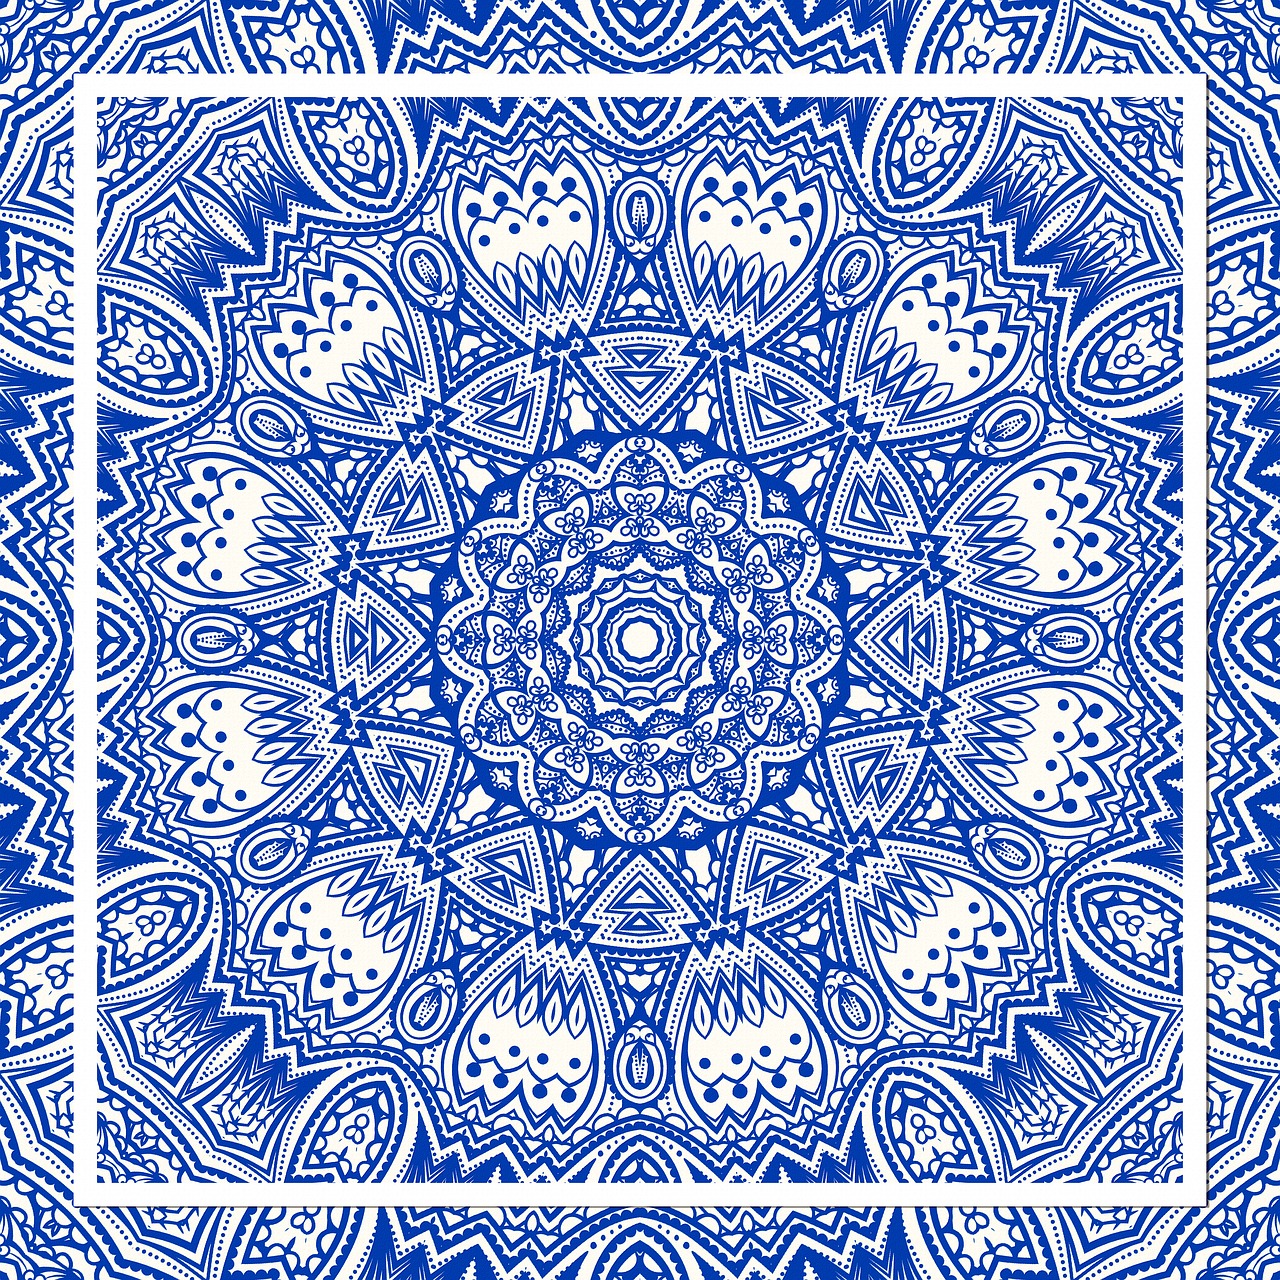 Mėlynas, Mandala, Kaleidoskopas, Meditacija, Dvasingumas, Čakra, Kvadratas, Besiūliai, Harmonija, Plytelės